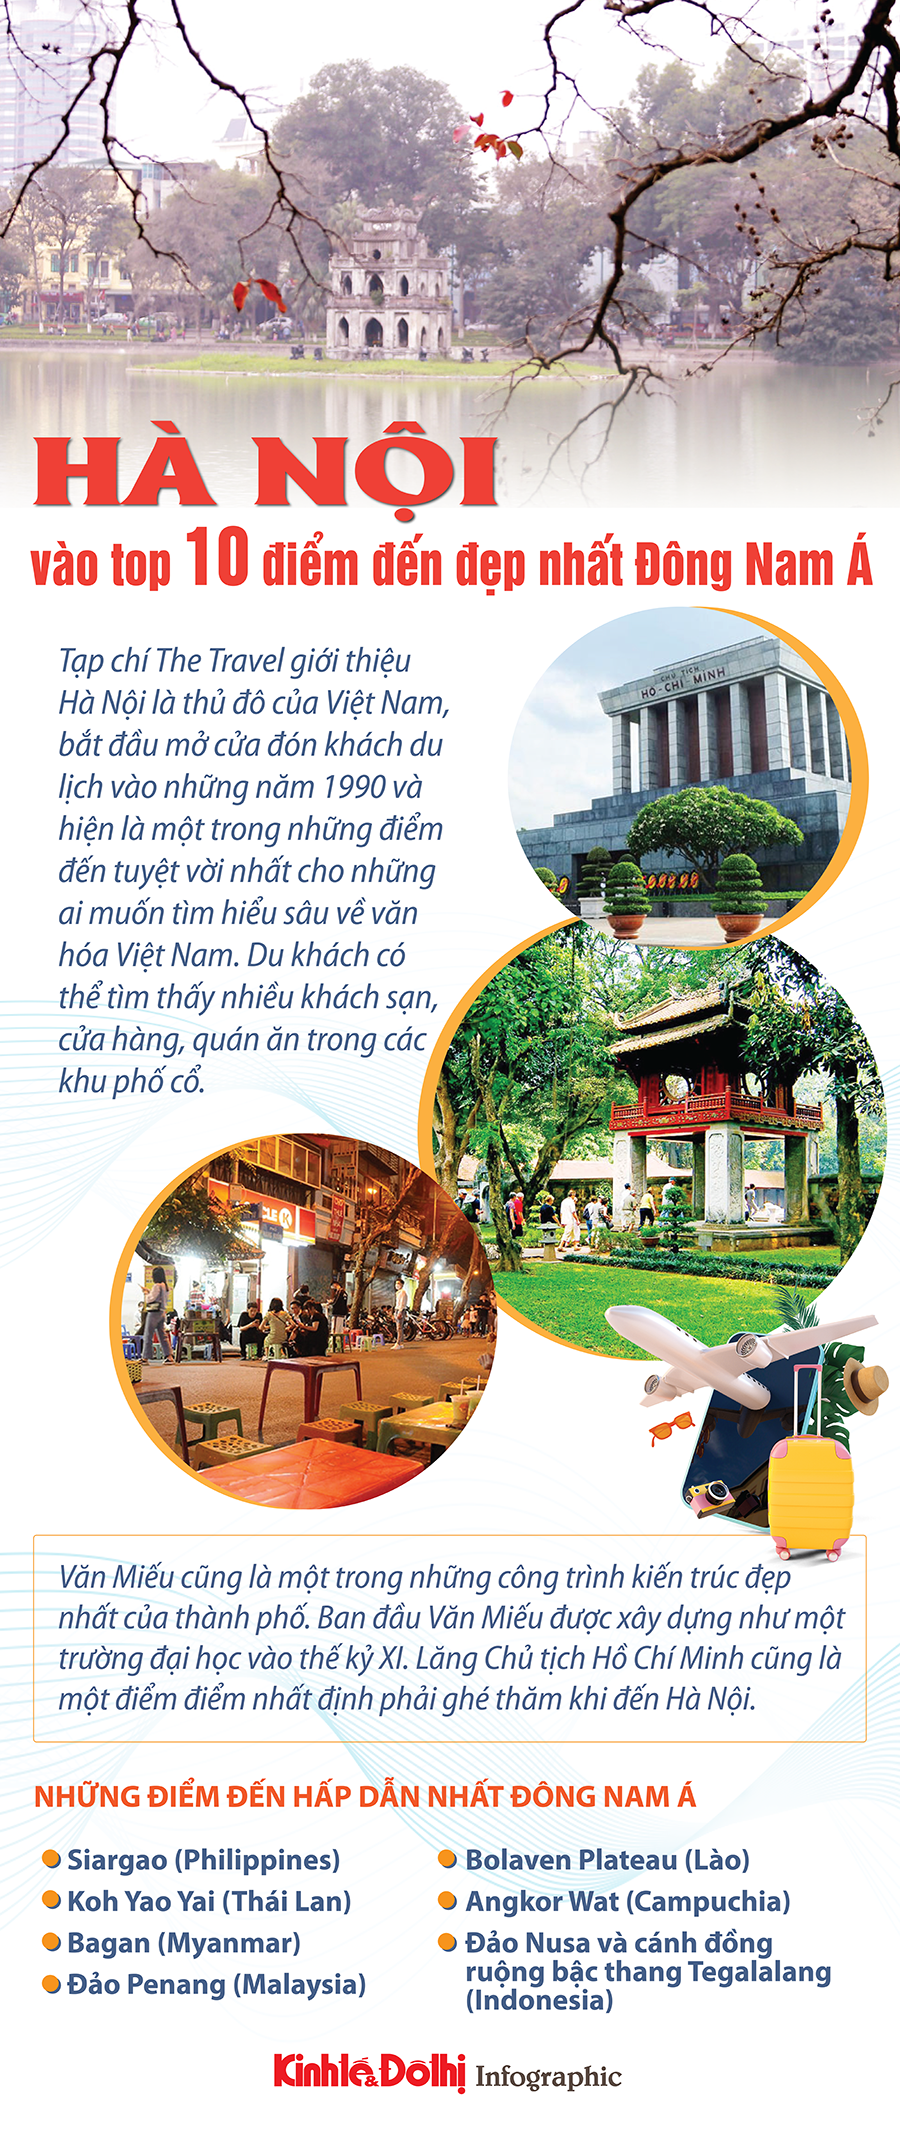 Hà Nội vào top 10 điểm đến đẹp nhất Đông Nam Á - Ảnh 1